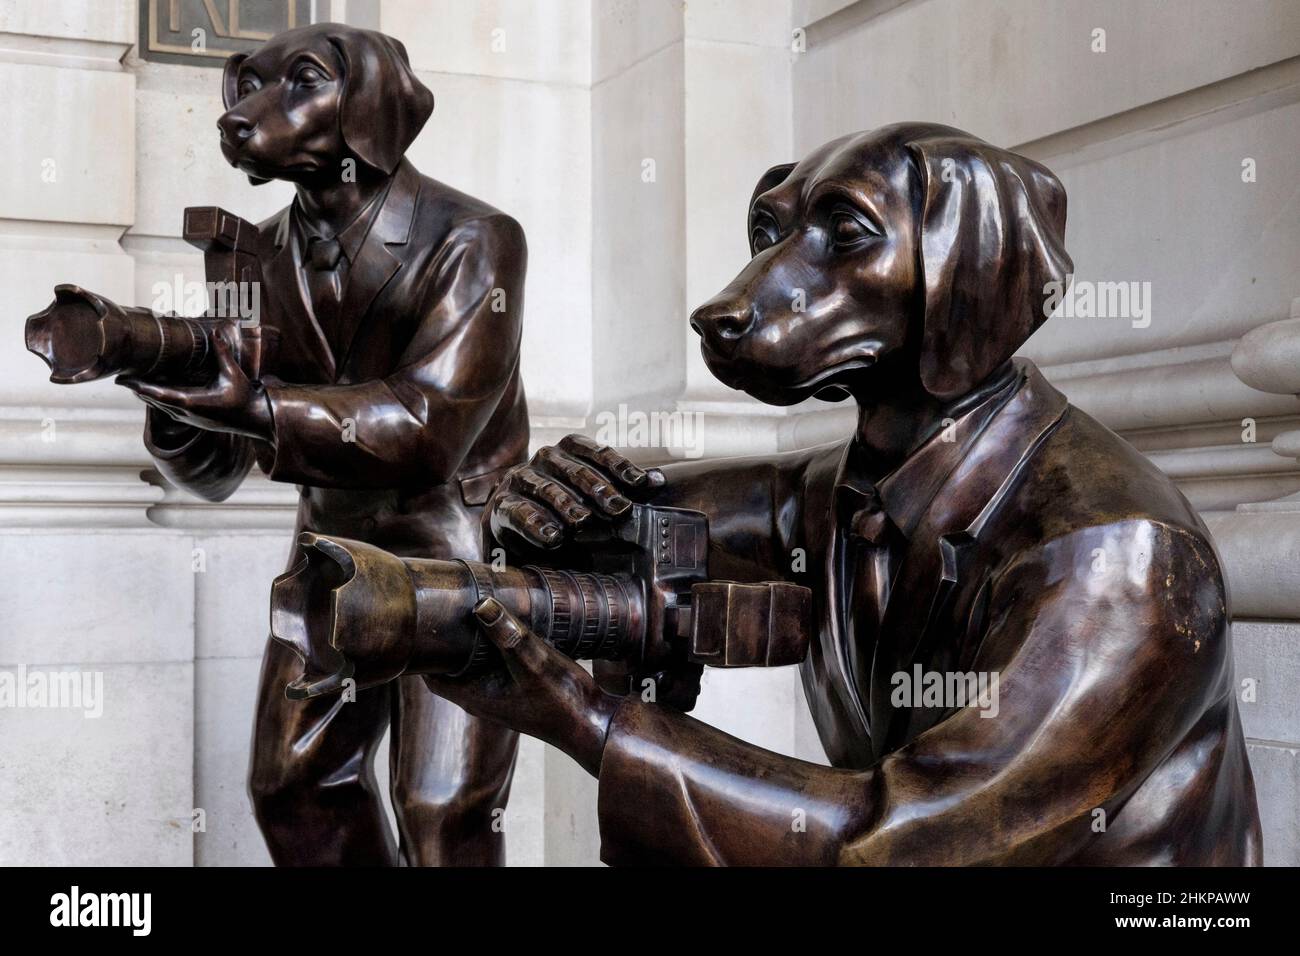 Paparazzi Dogs; esculturas de bronce del dúo artístico Gillie y Marc de Nueva York en exhibición pública a la entrada del Royal Exchange, Londres, Reino Unido. Foto de stock